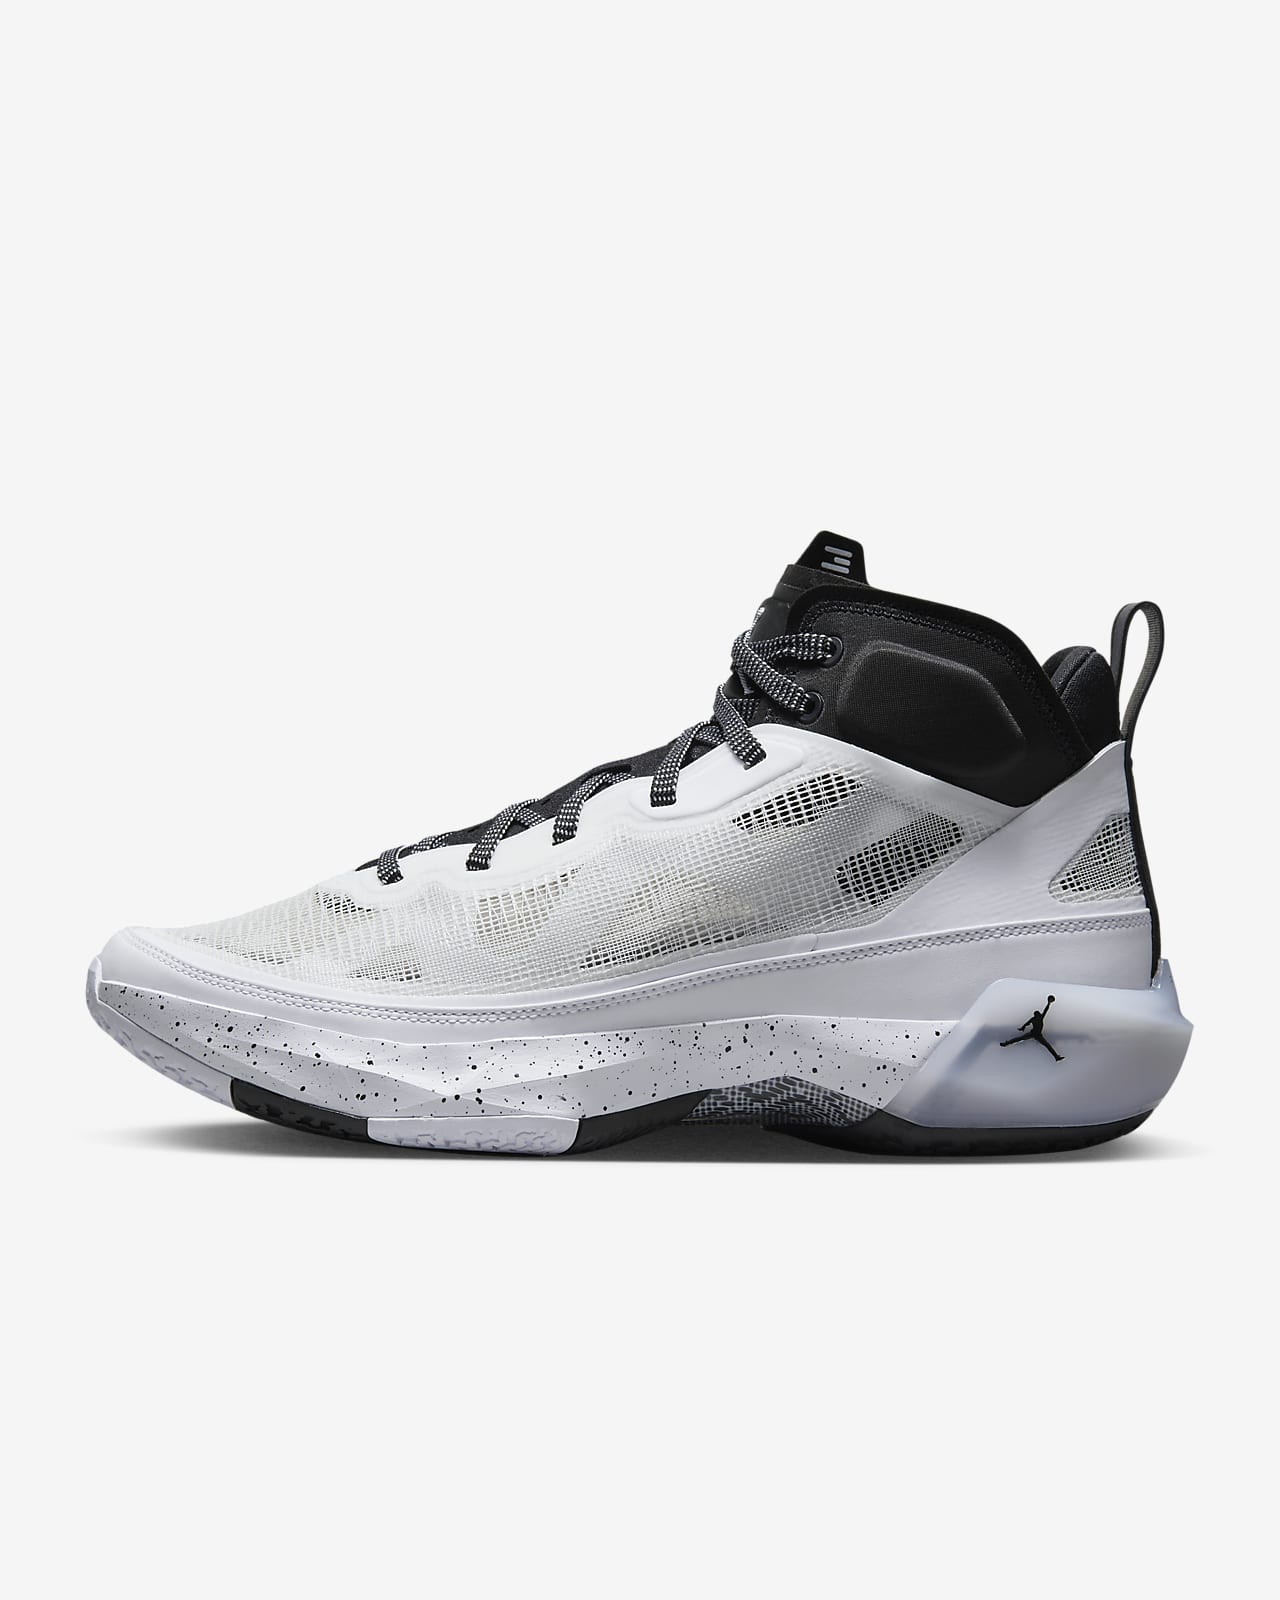 Calzado de básquetbol Air Jordan XXXVII. Nike